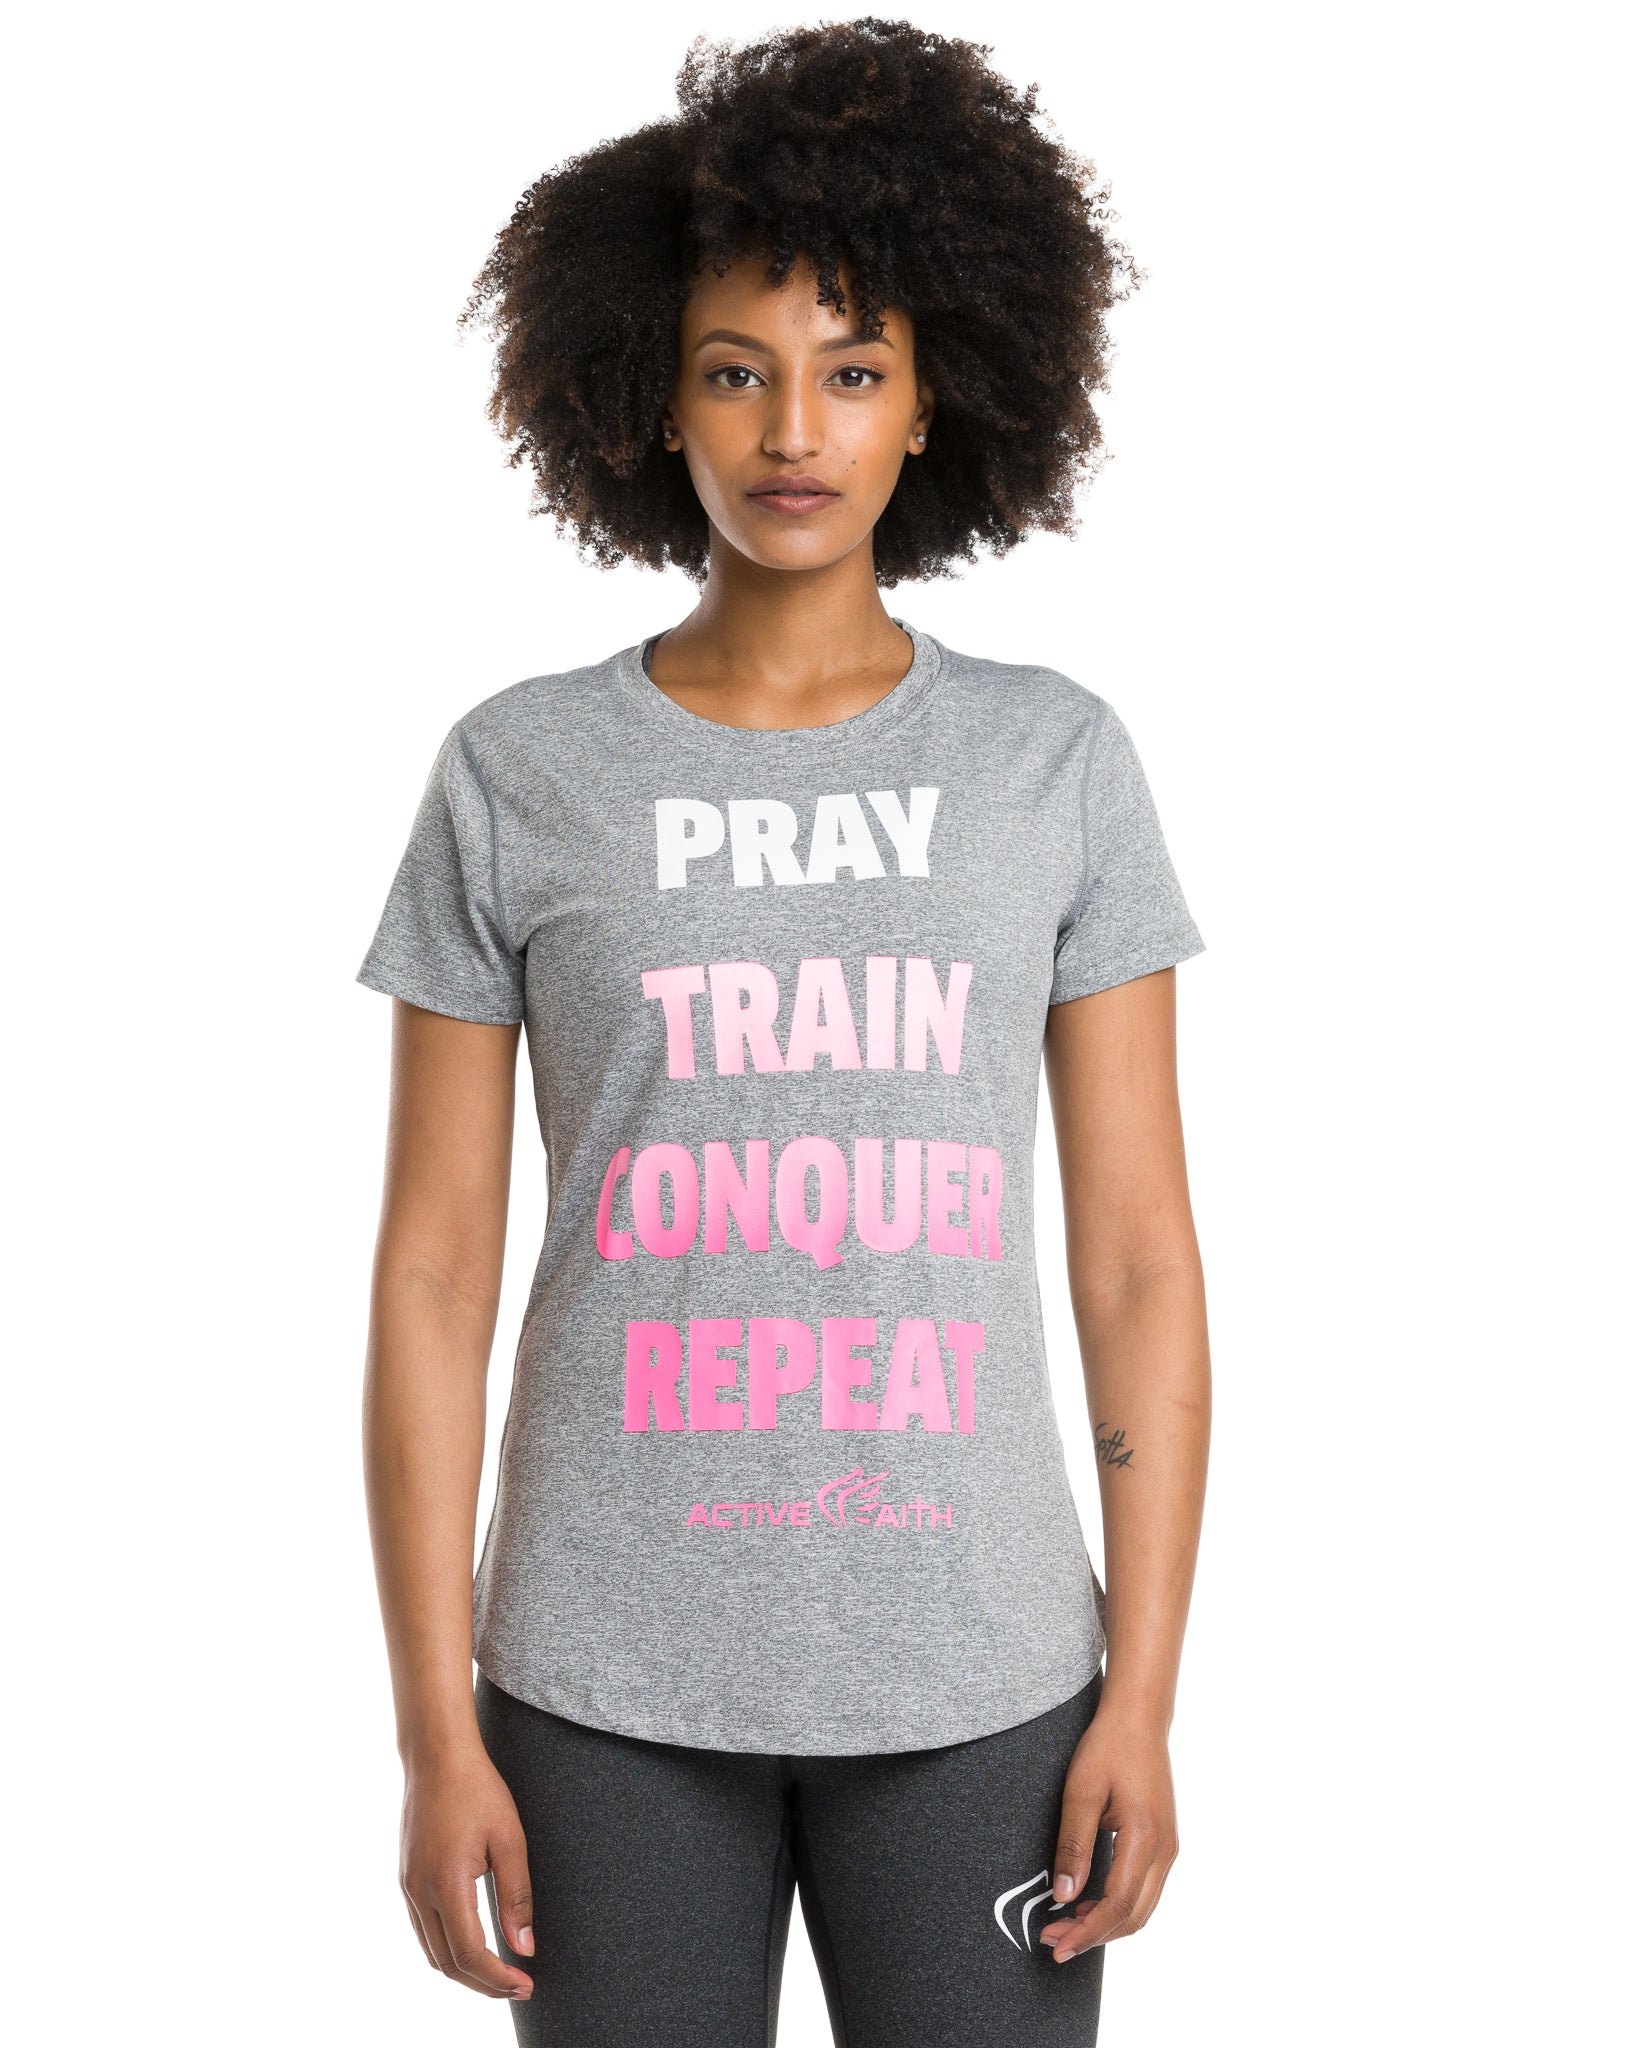 Women's "Pray Repeat" Word Shirt